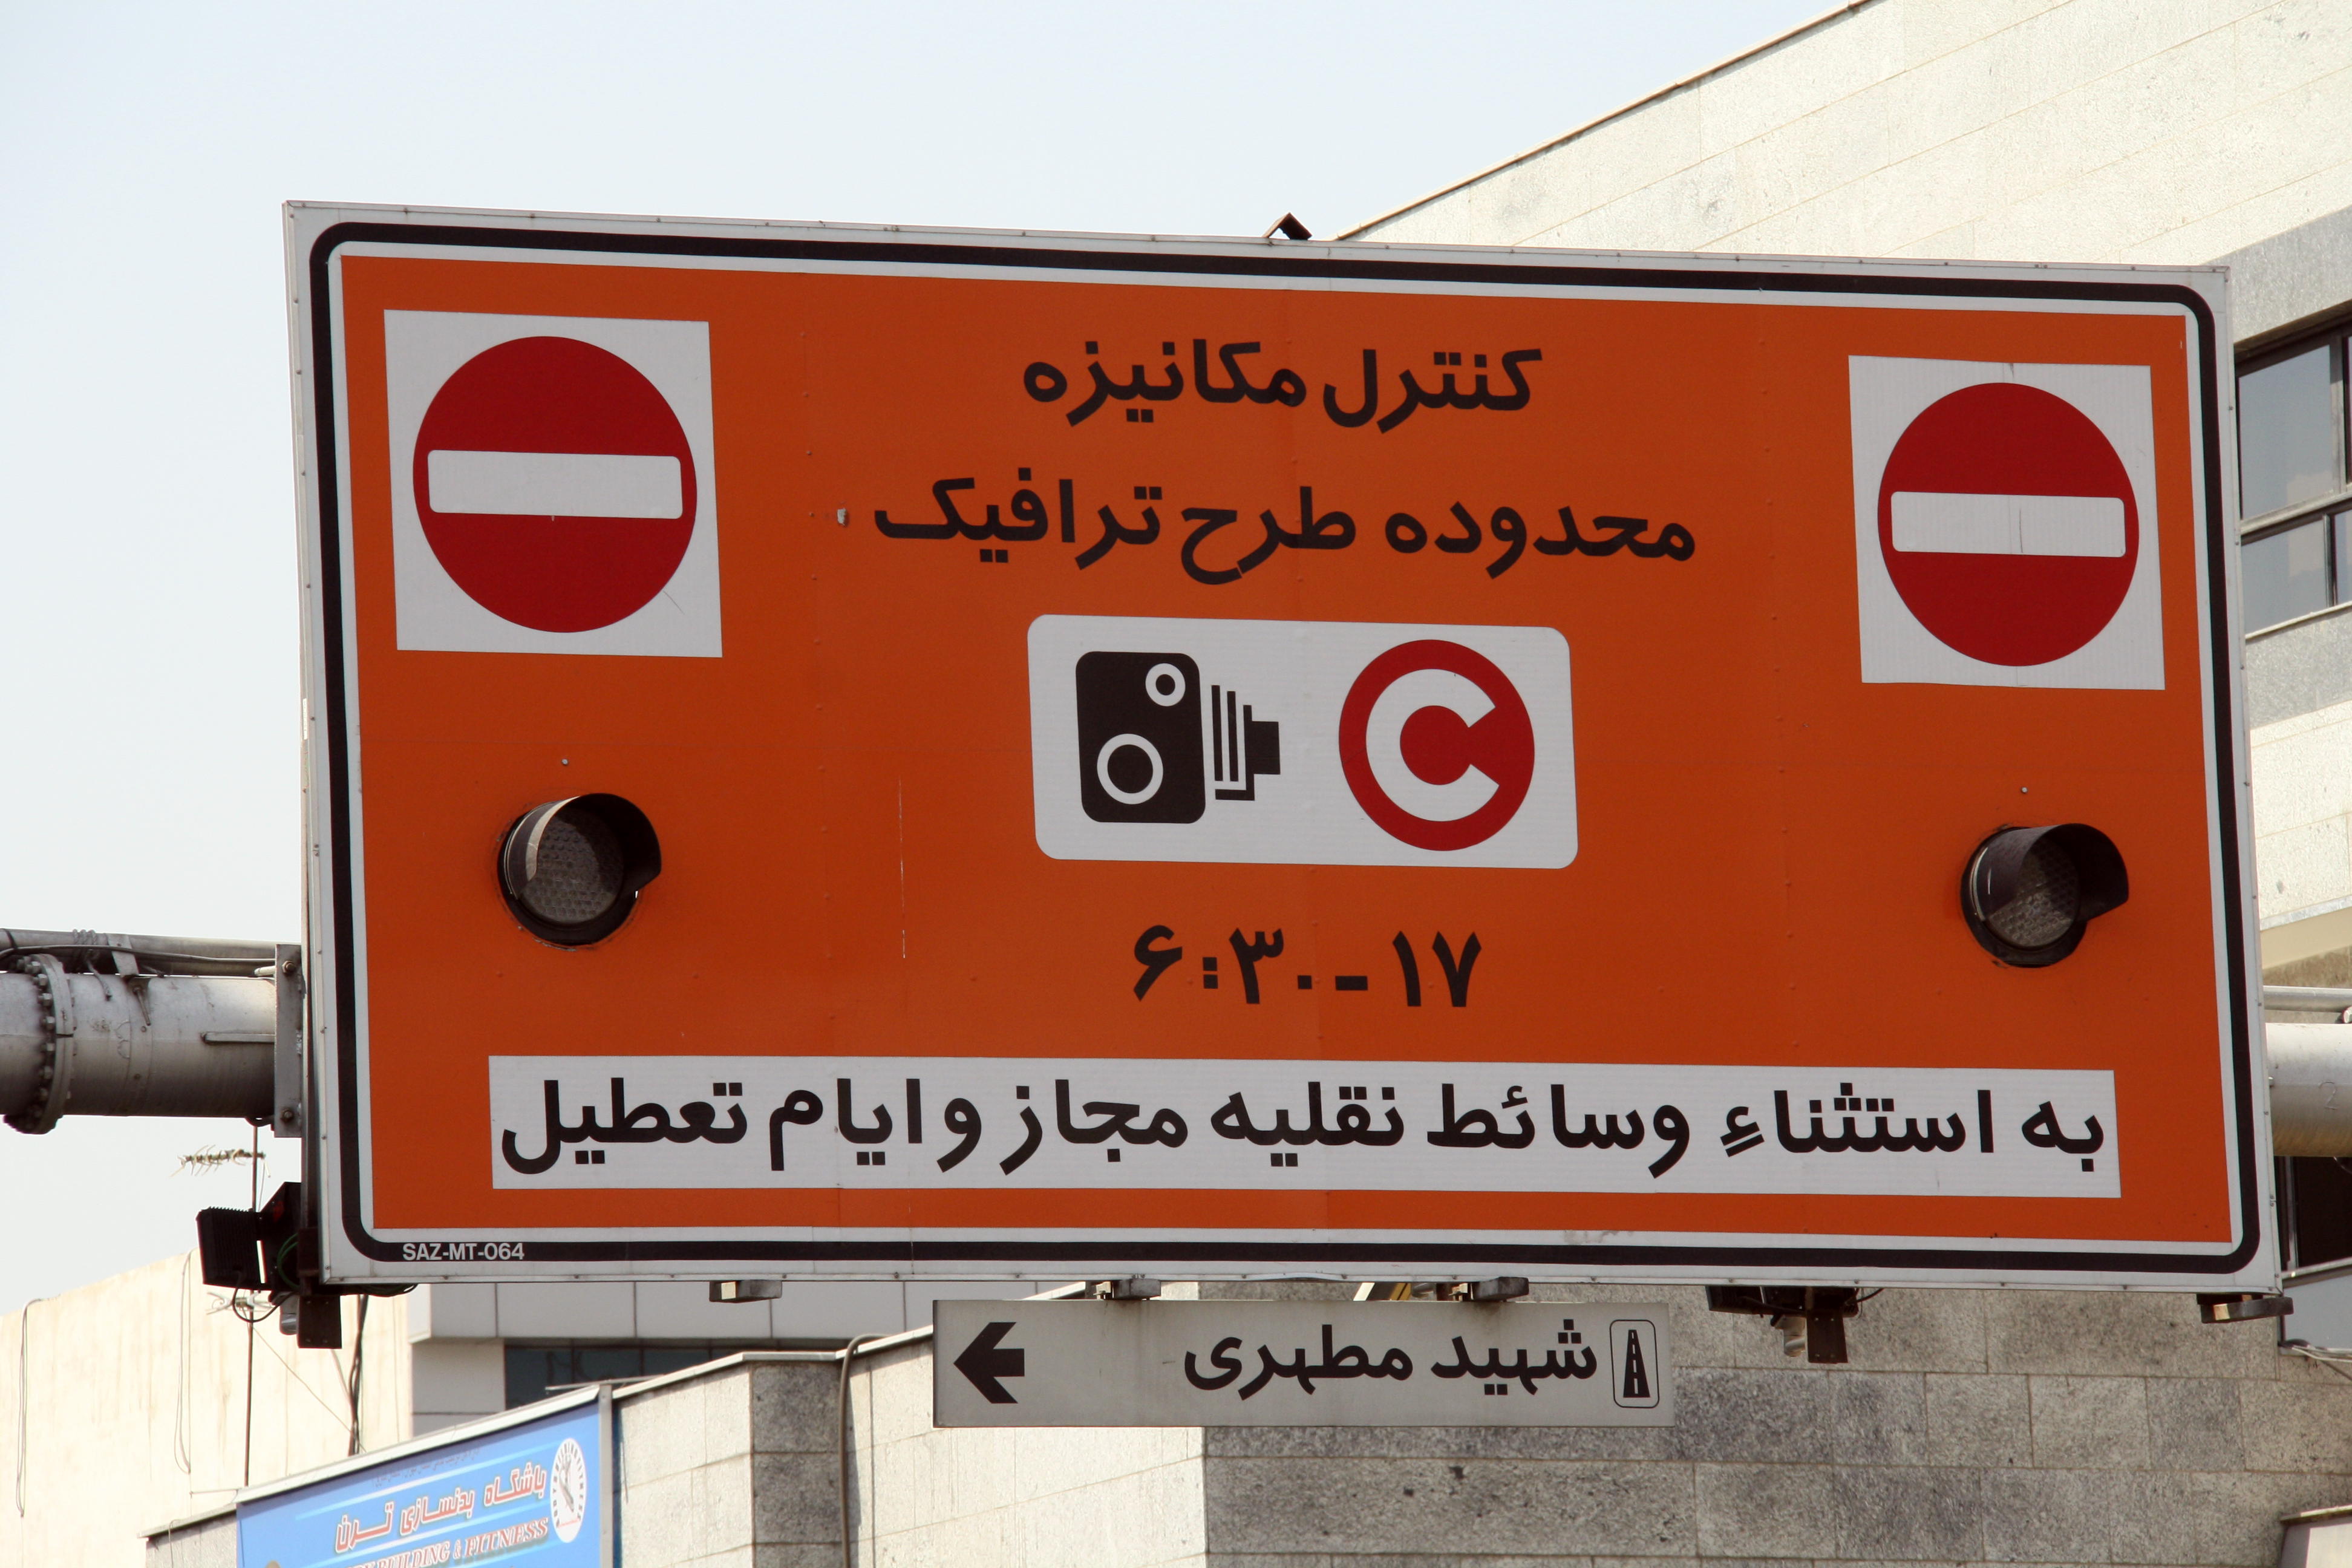 فراخوان شهرداری تهران برای خبرنگاران متقاضی طرح ترافیک